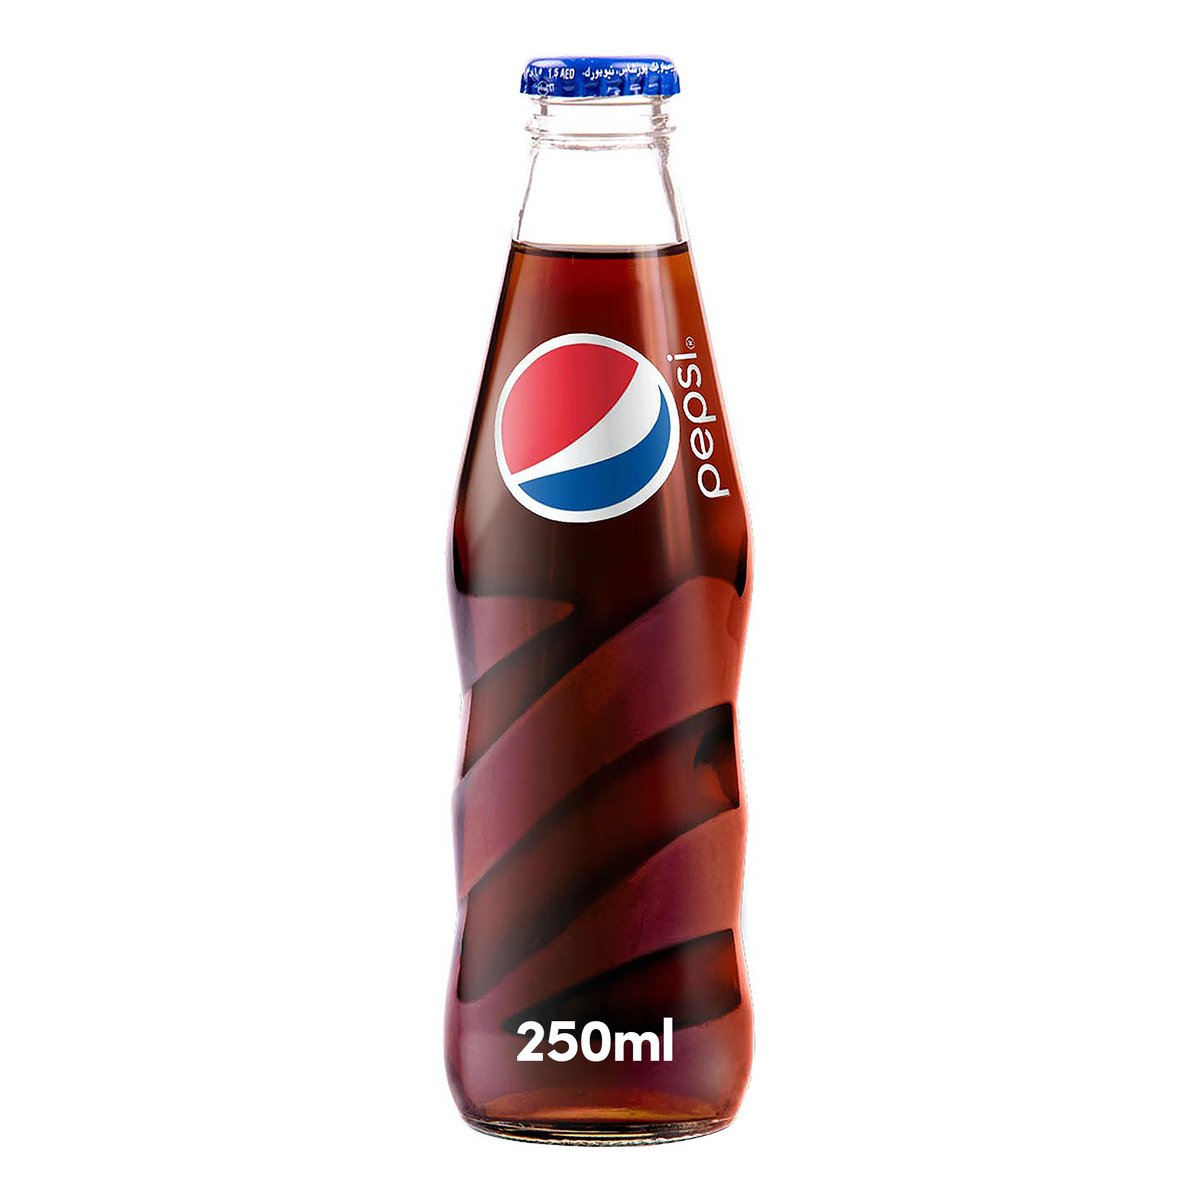 اشتري قم بشراء بيبسي مشروب غازي عبوة زجاجية 250 مل Online at Best Price من الموقع - من لولو هايبر ماركت Cola Bottle في السعودية